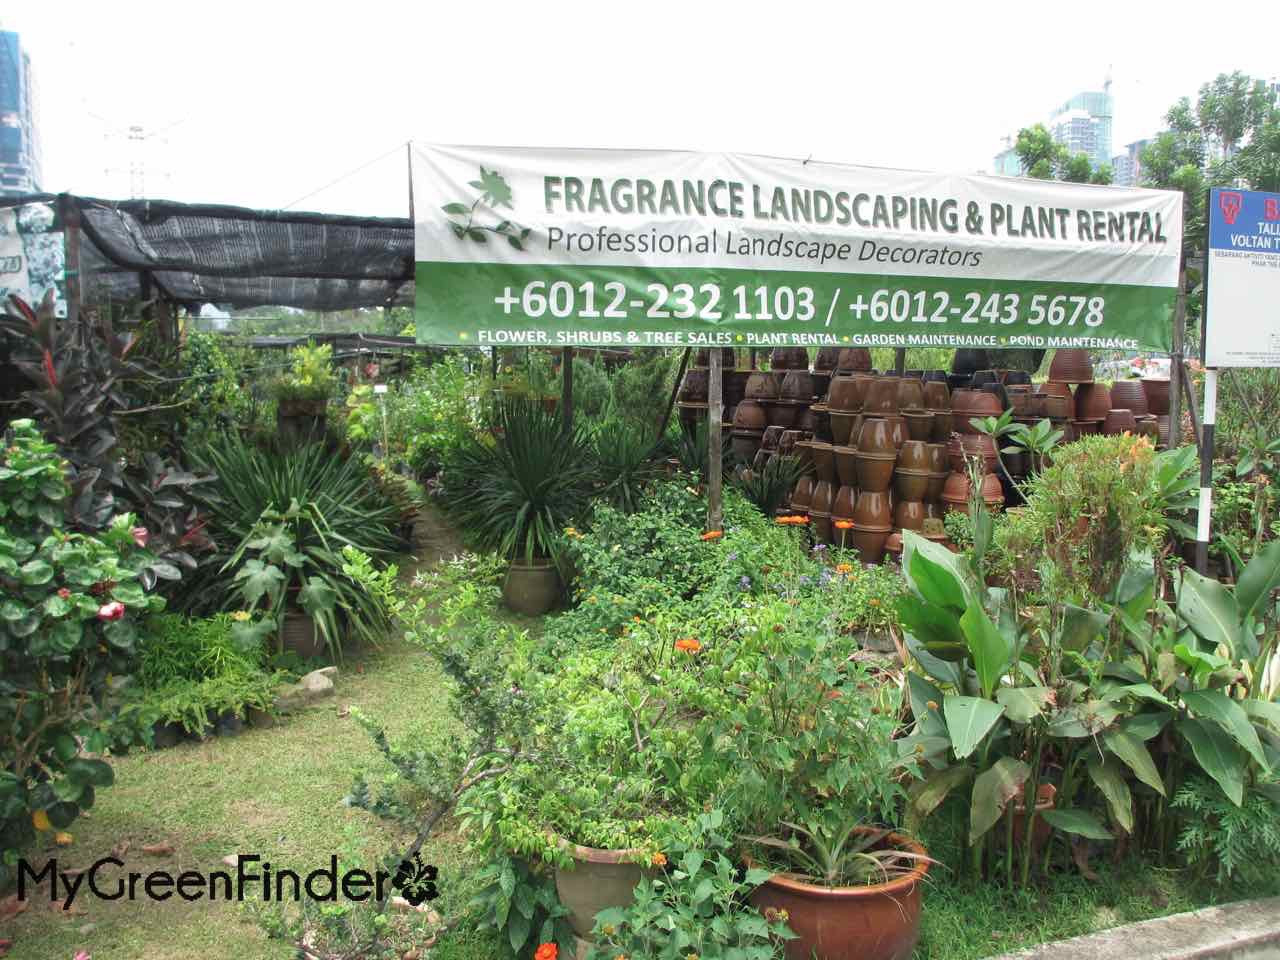 My Green Finder | Plant Vendors: Fragrance Landscaping & Plant Rental